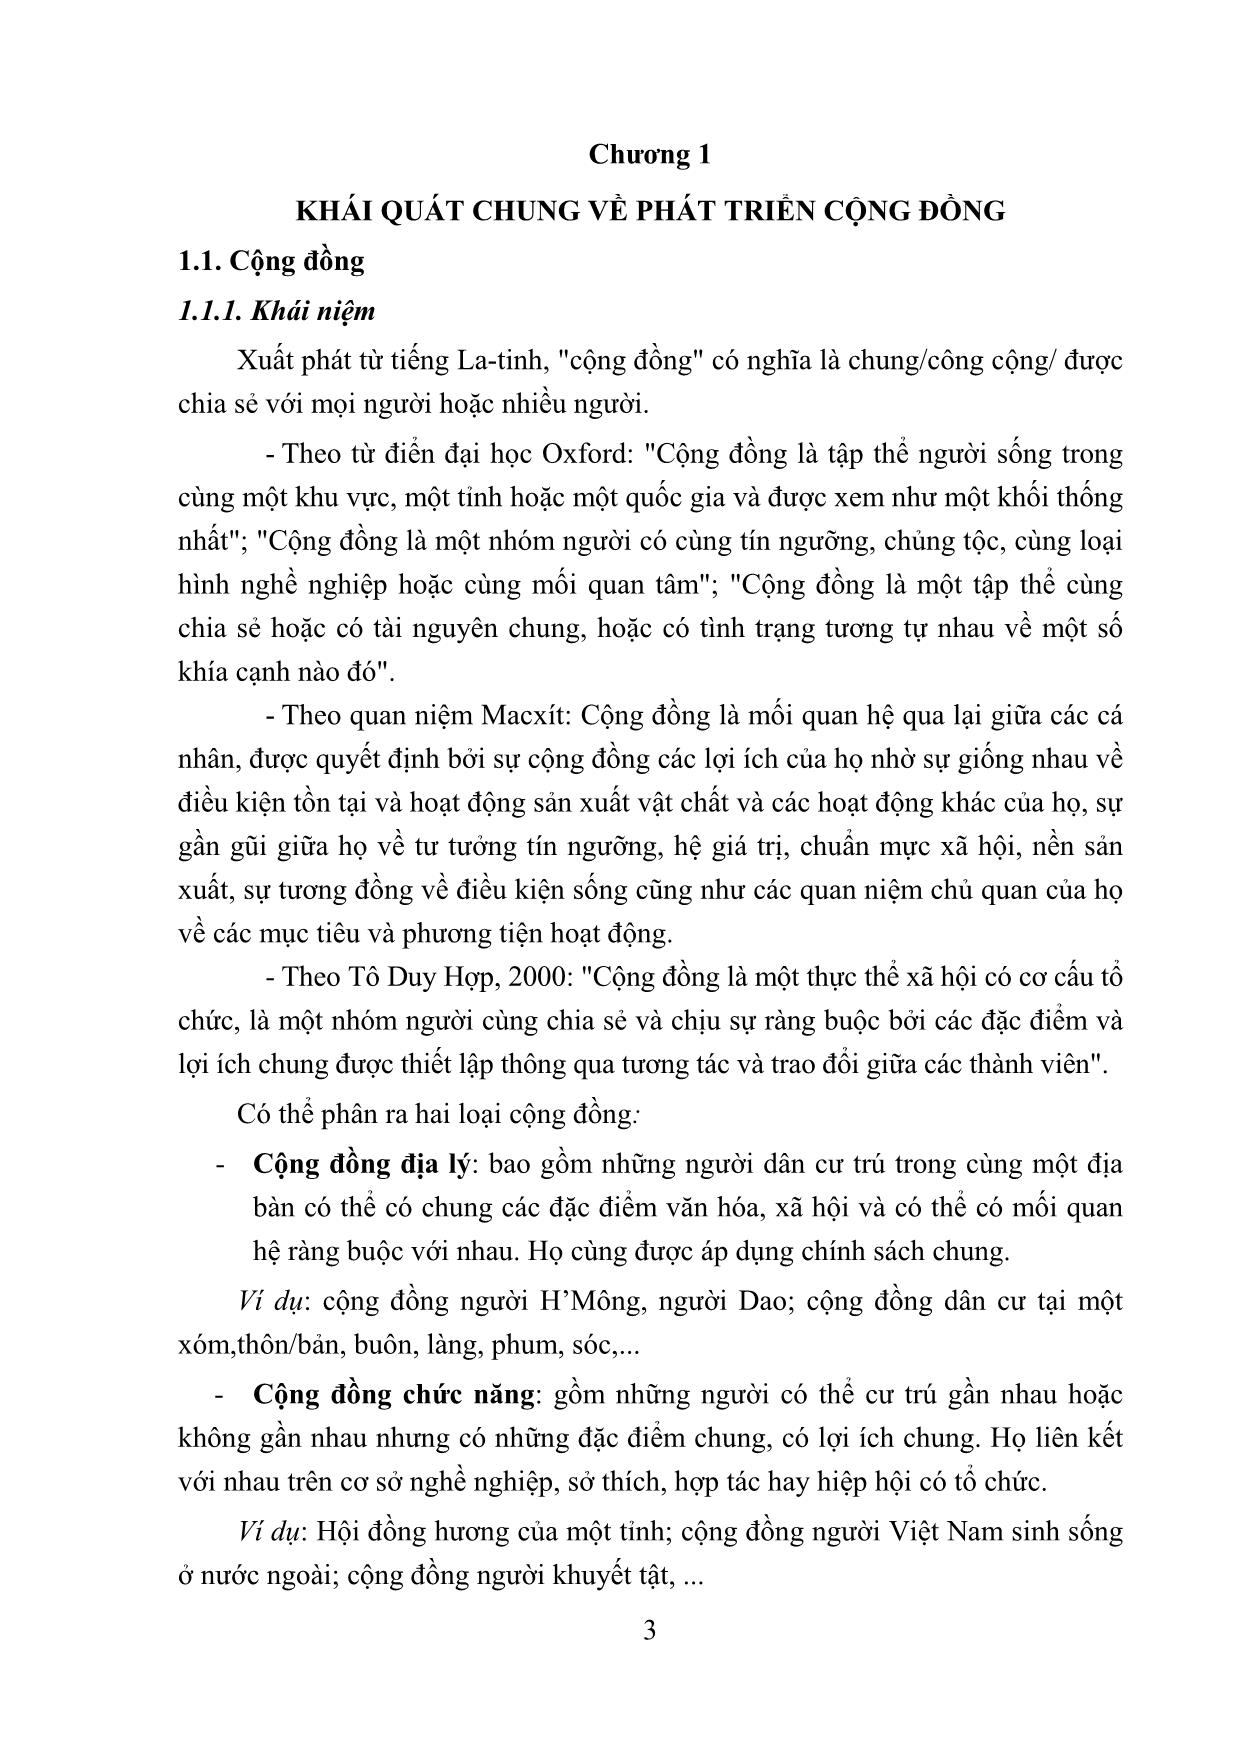 Bài giảng Phát triển cộng đồng - Hoàng Thị Minh Huệ trang 5